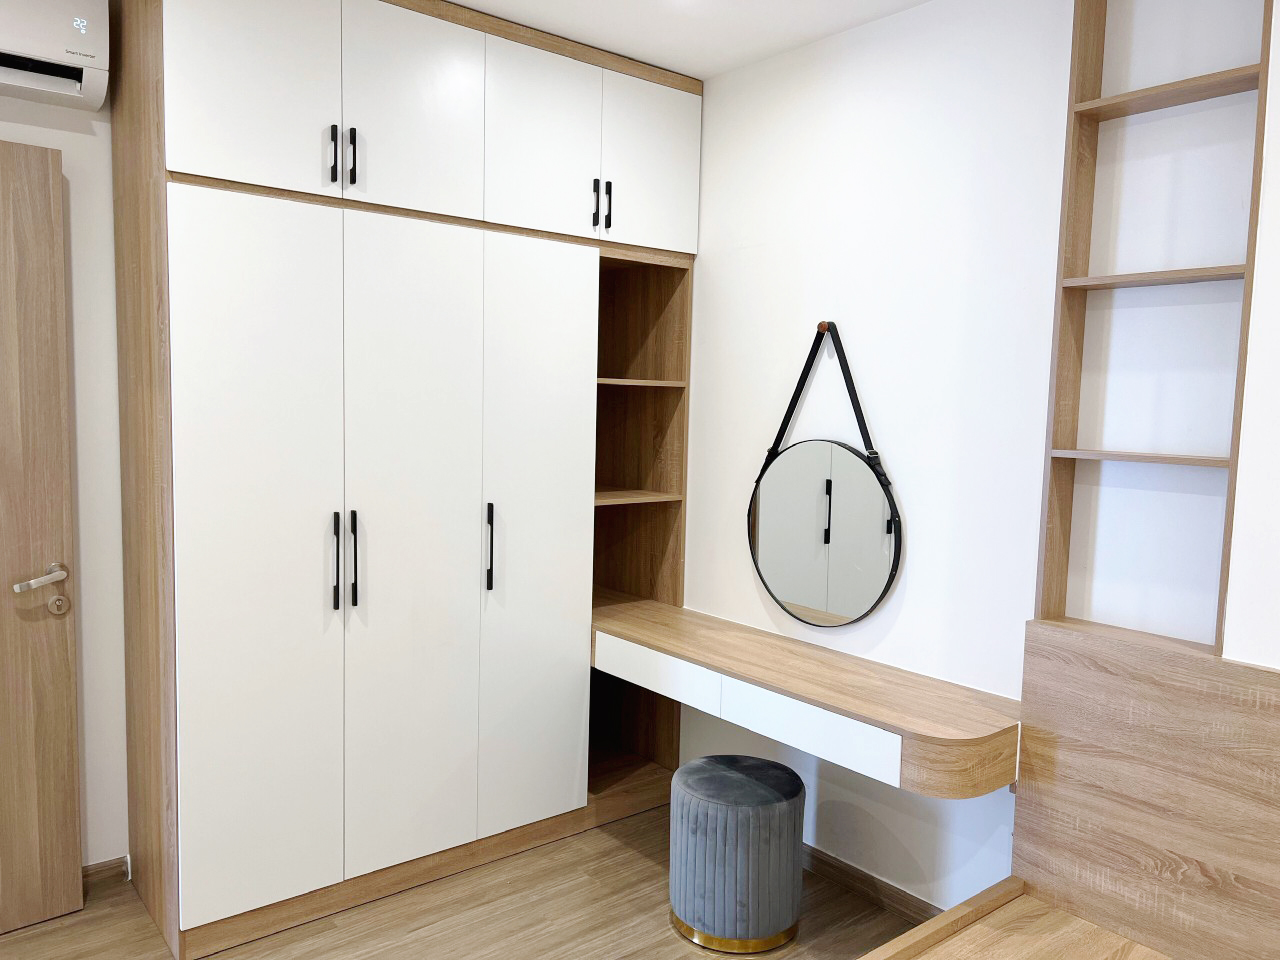 Hoàn thiện nội thất phòng ngủ Căn hộ Tòa S10.03 The Origami Vinhomes phong cách Bắc Âu Scandinavian, phong cách Hiện đại Modern